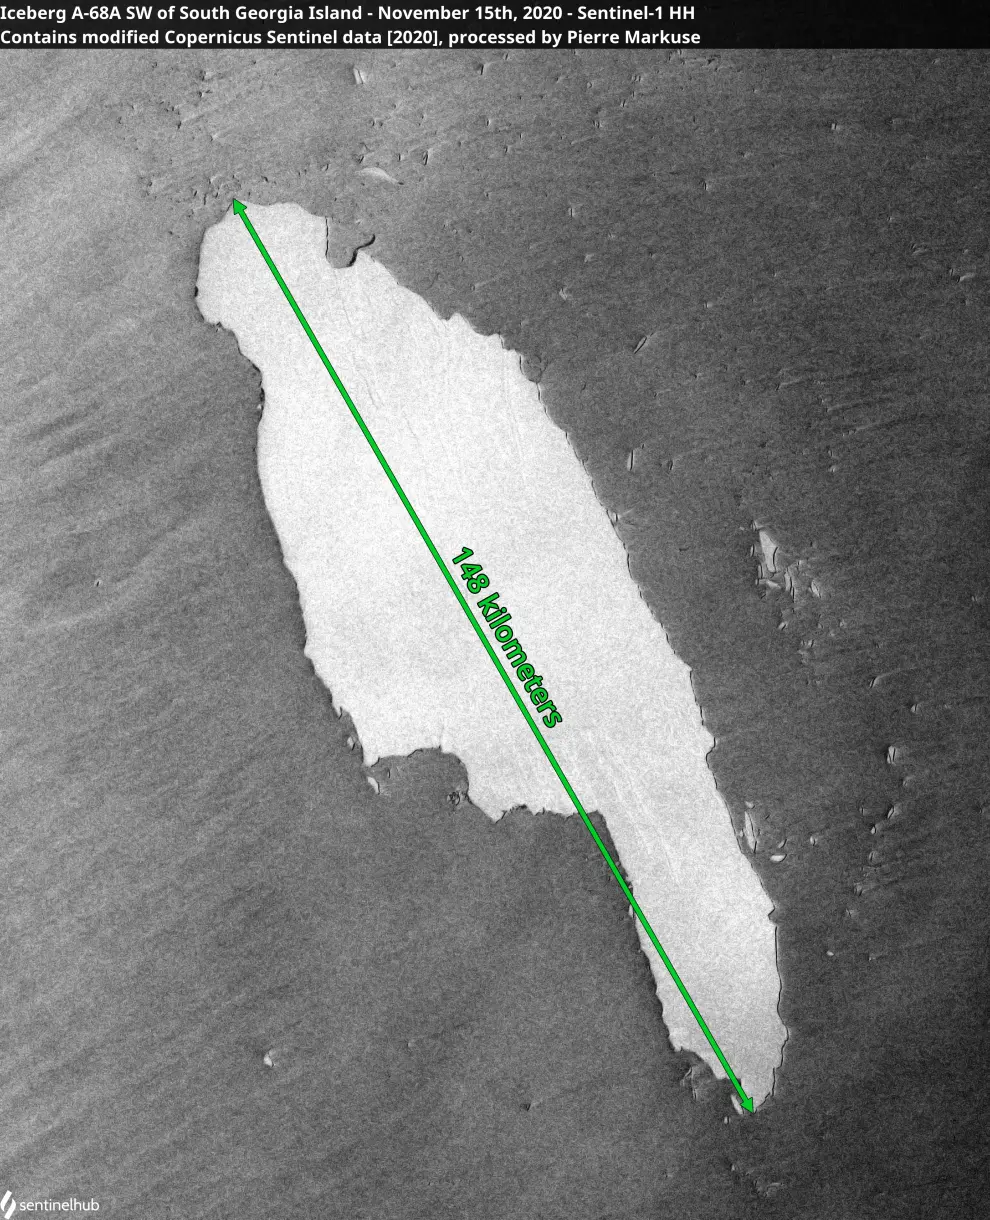 FILE PHOTO: Satellite image of the A-68A iceberg as it floats toward South Georgia island